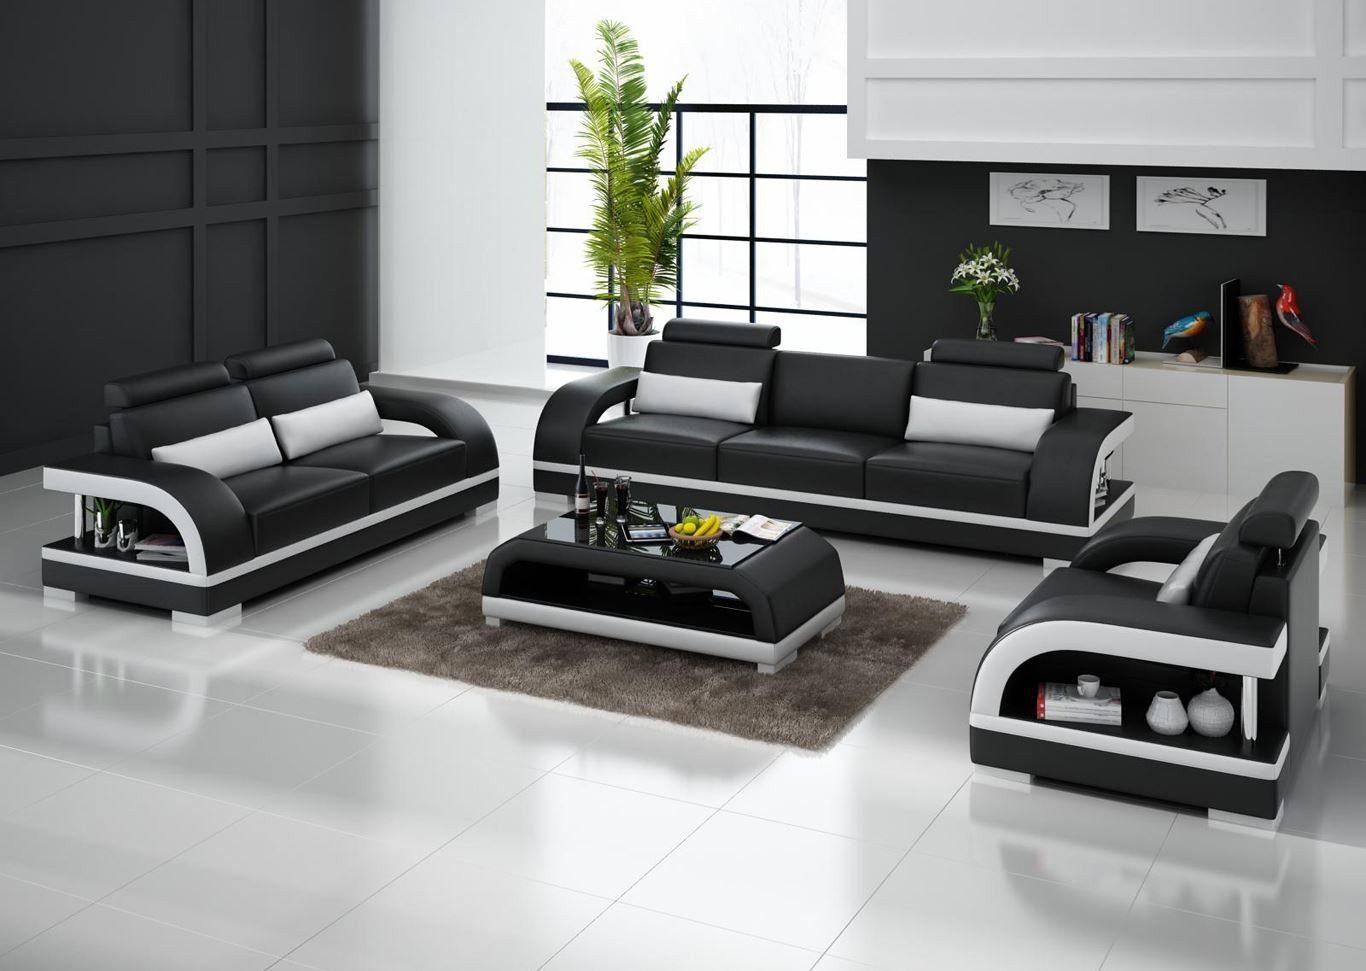 Made Neu, Weiße Moderne Europe 3+2+1 Sogarnitur in Luxus Schwarz JVmoebel Polstermöbel Garnitur Sofa